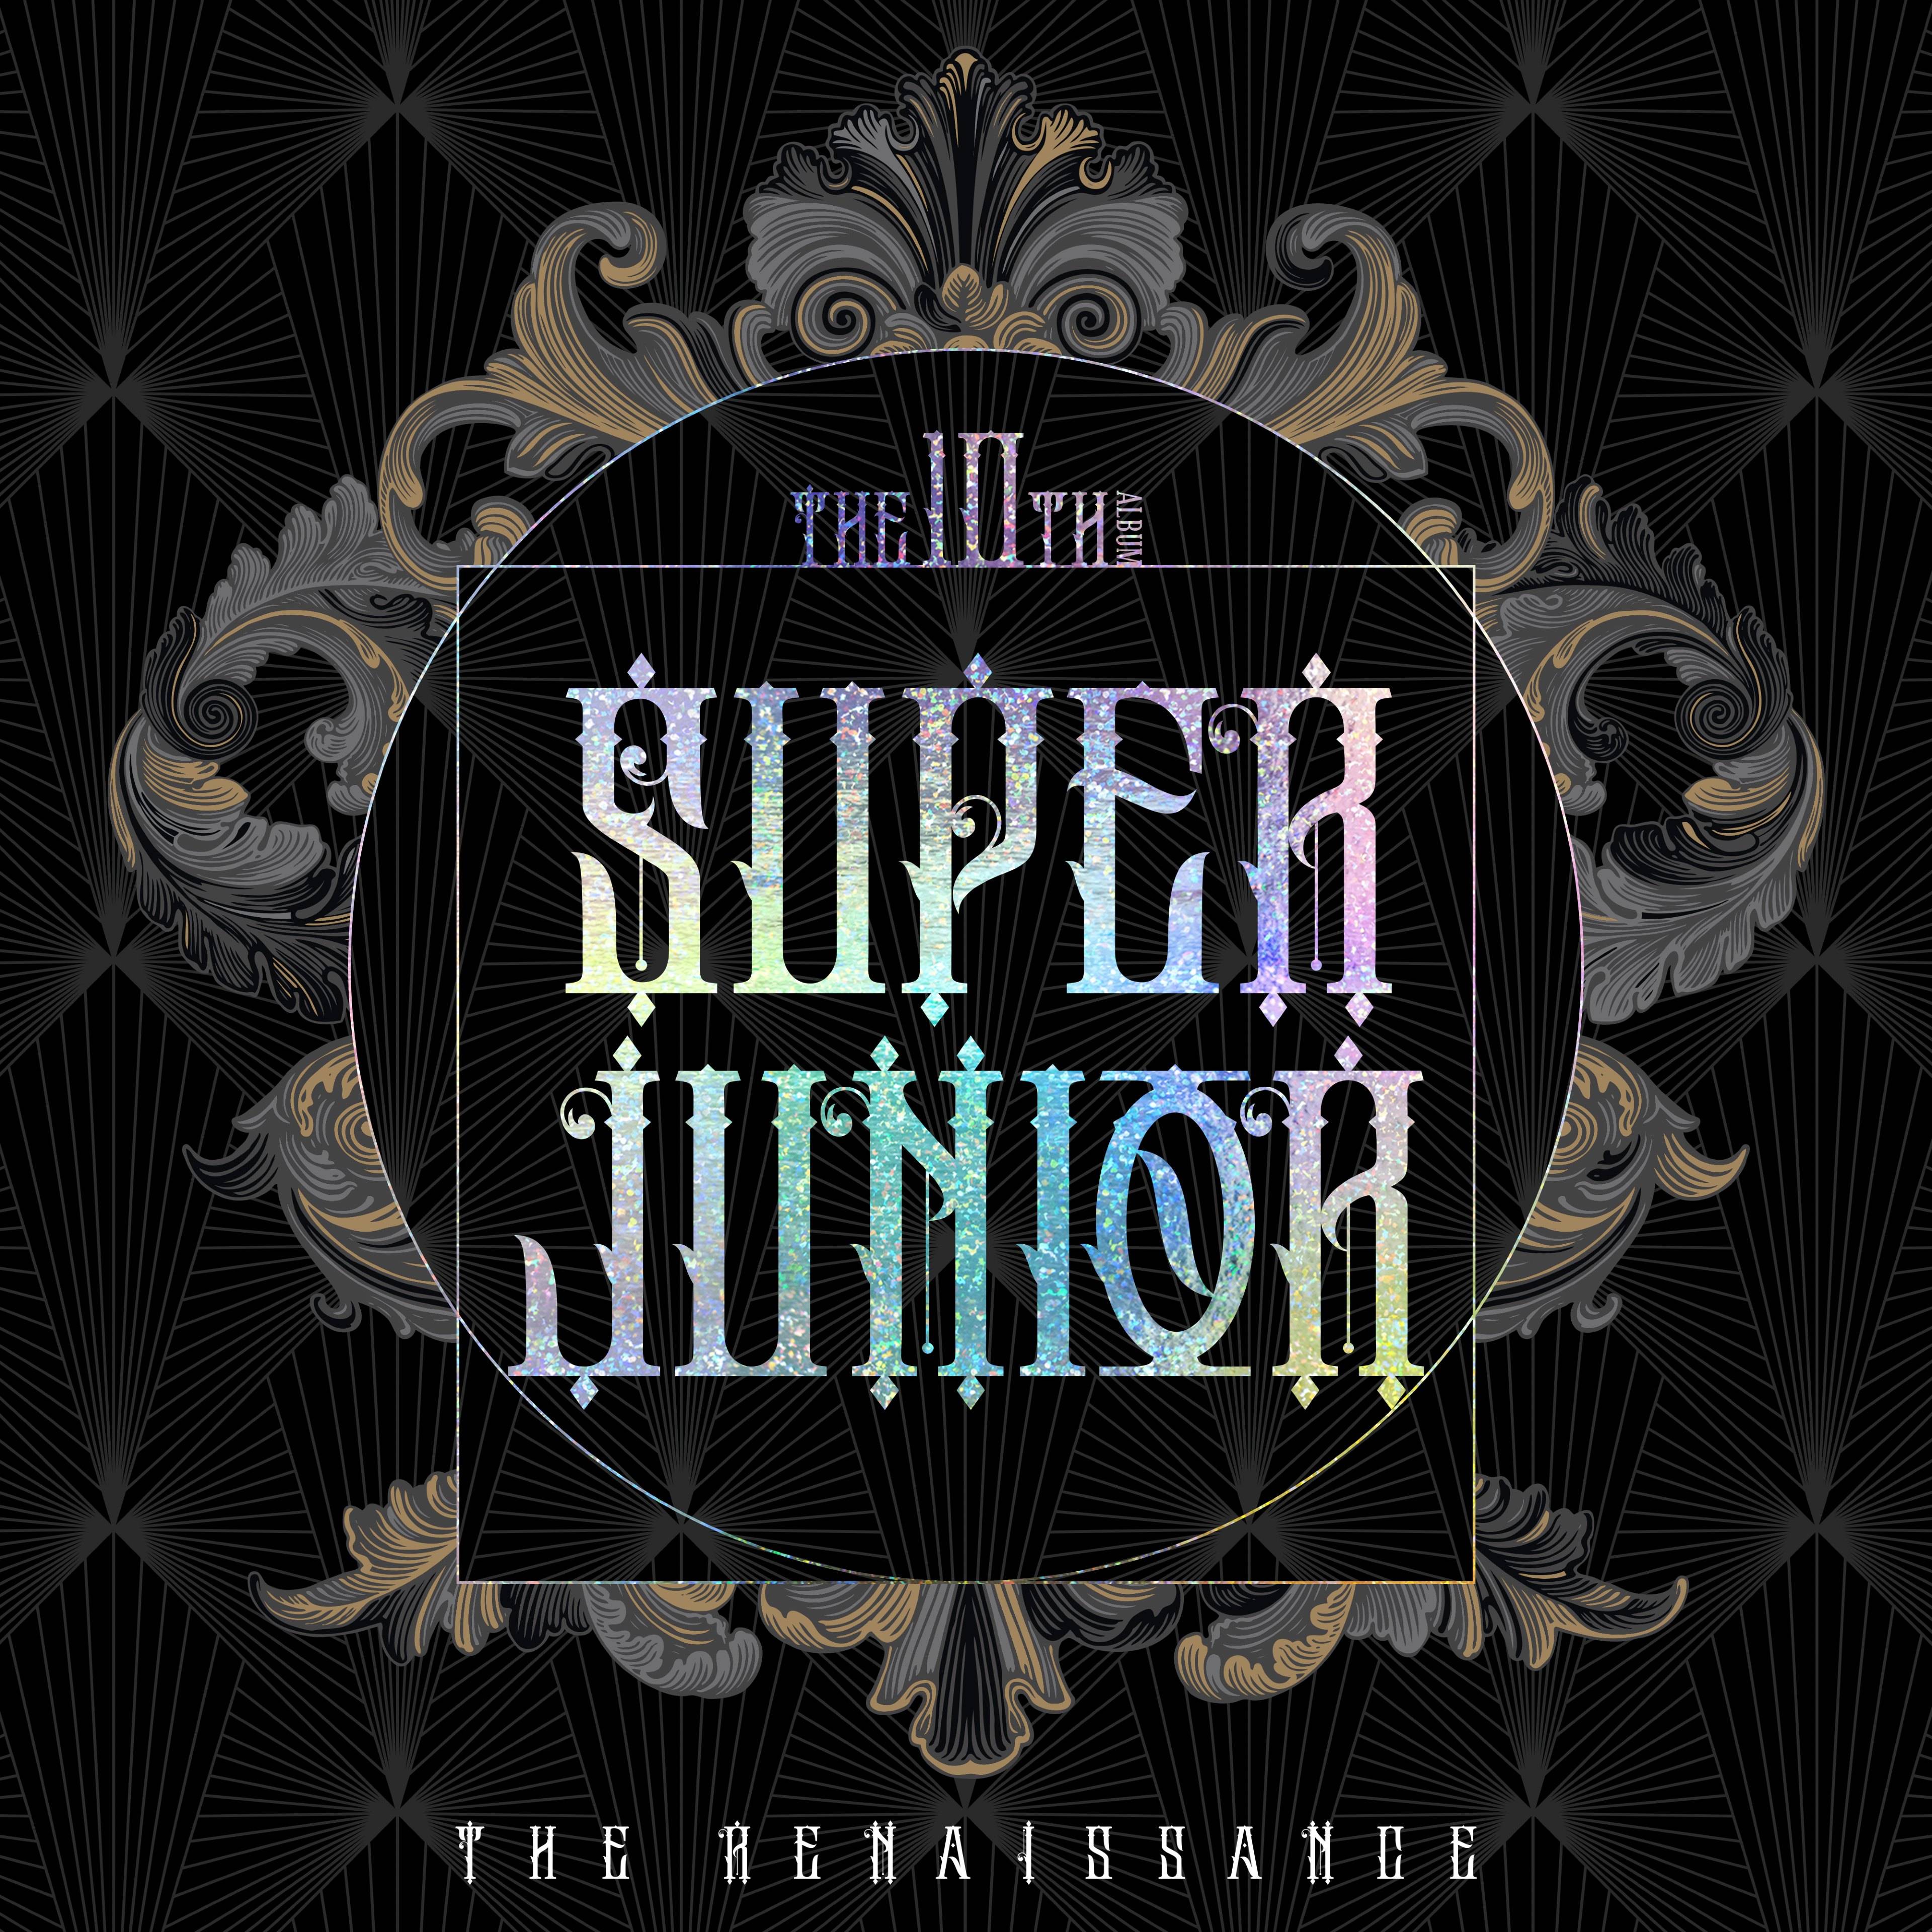 sj排行榜_superjunior-D&E正规1辑,获香港等22地区iTunes专辑排行榜冠军